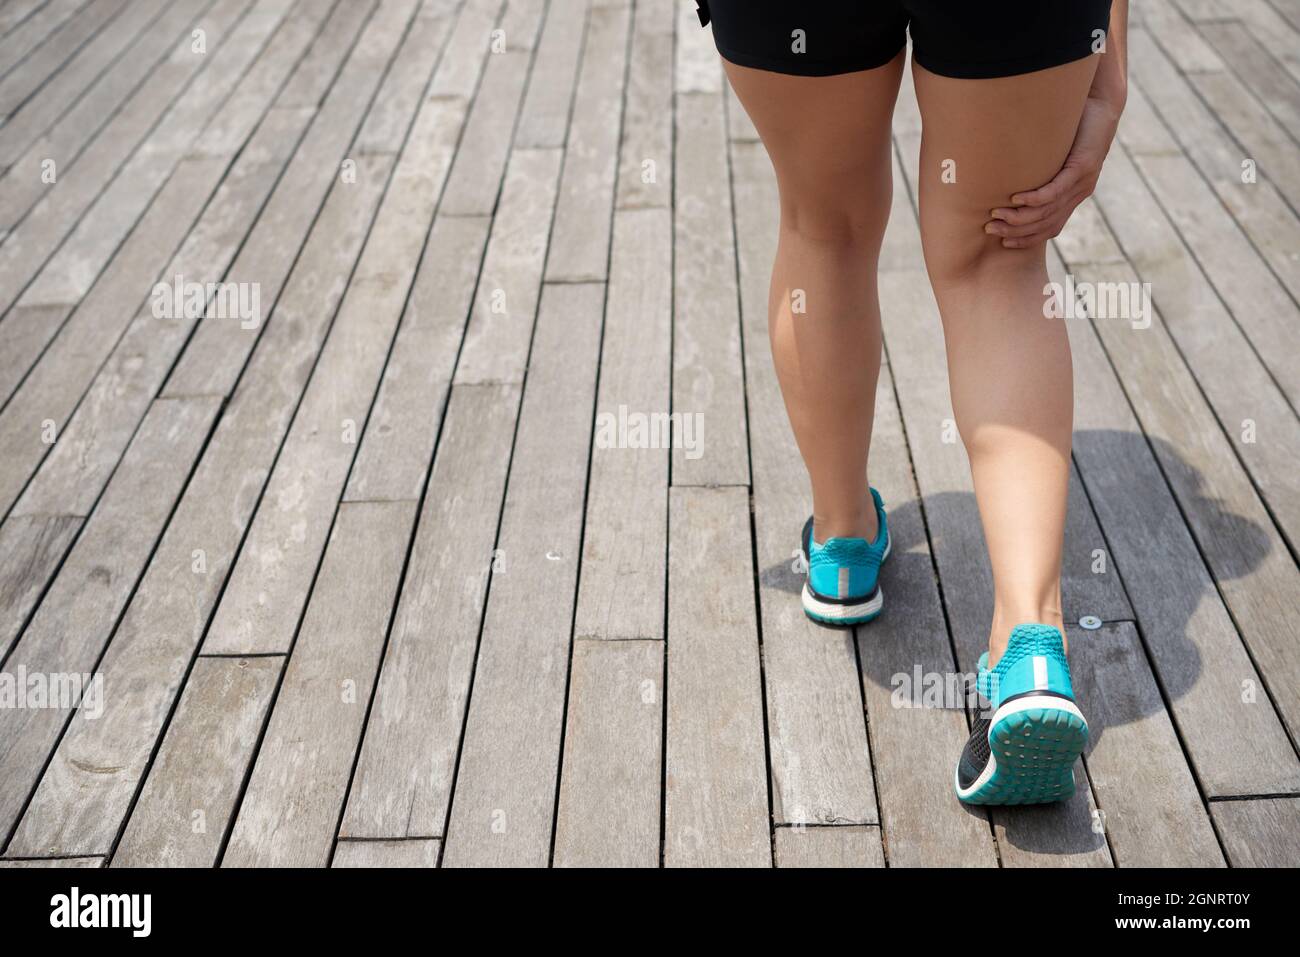 Rückansicht einer unerkennbaren Läuferin in blauen Sportschuhen, die auf einem hölzernen Pier steht und den Schmerzpunkt berührt, während sie unter der Kniescheibe Schmerzen spürt Stockfoto